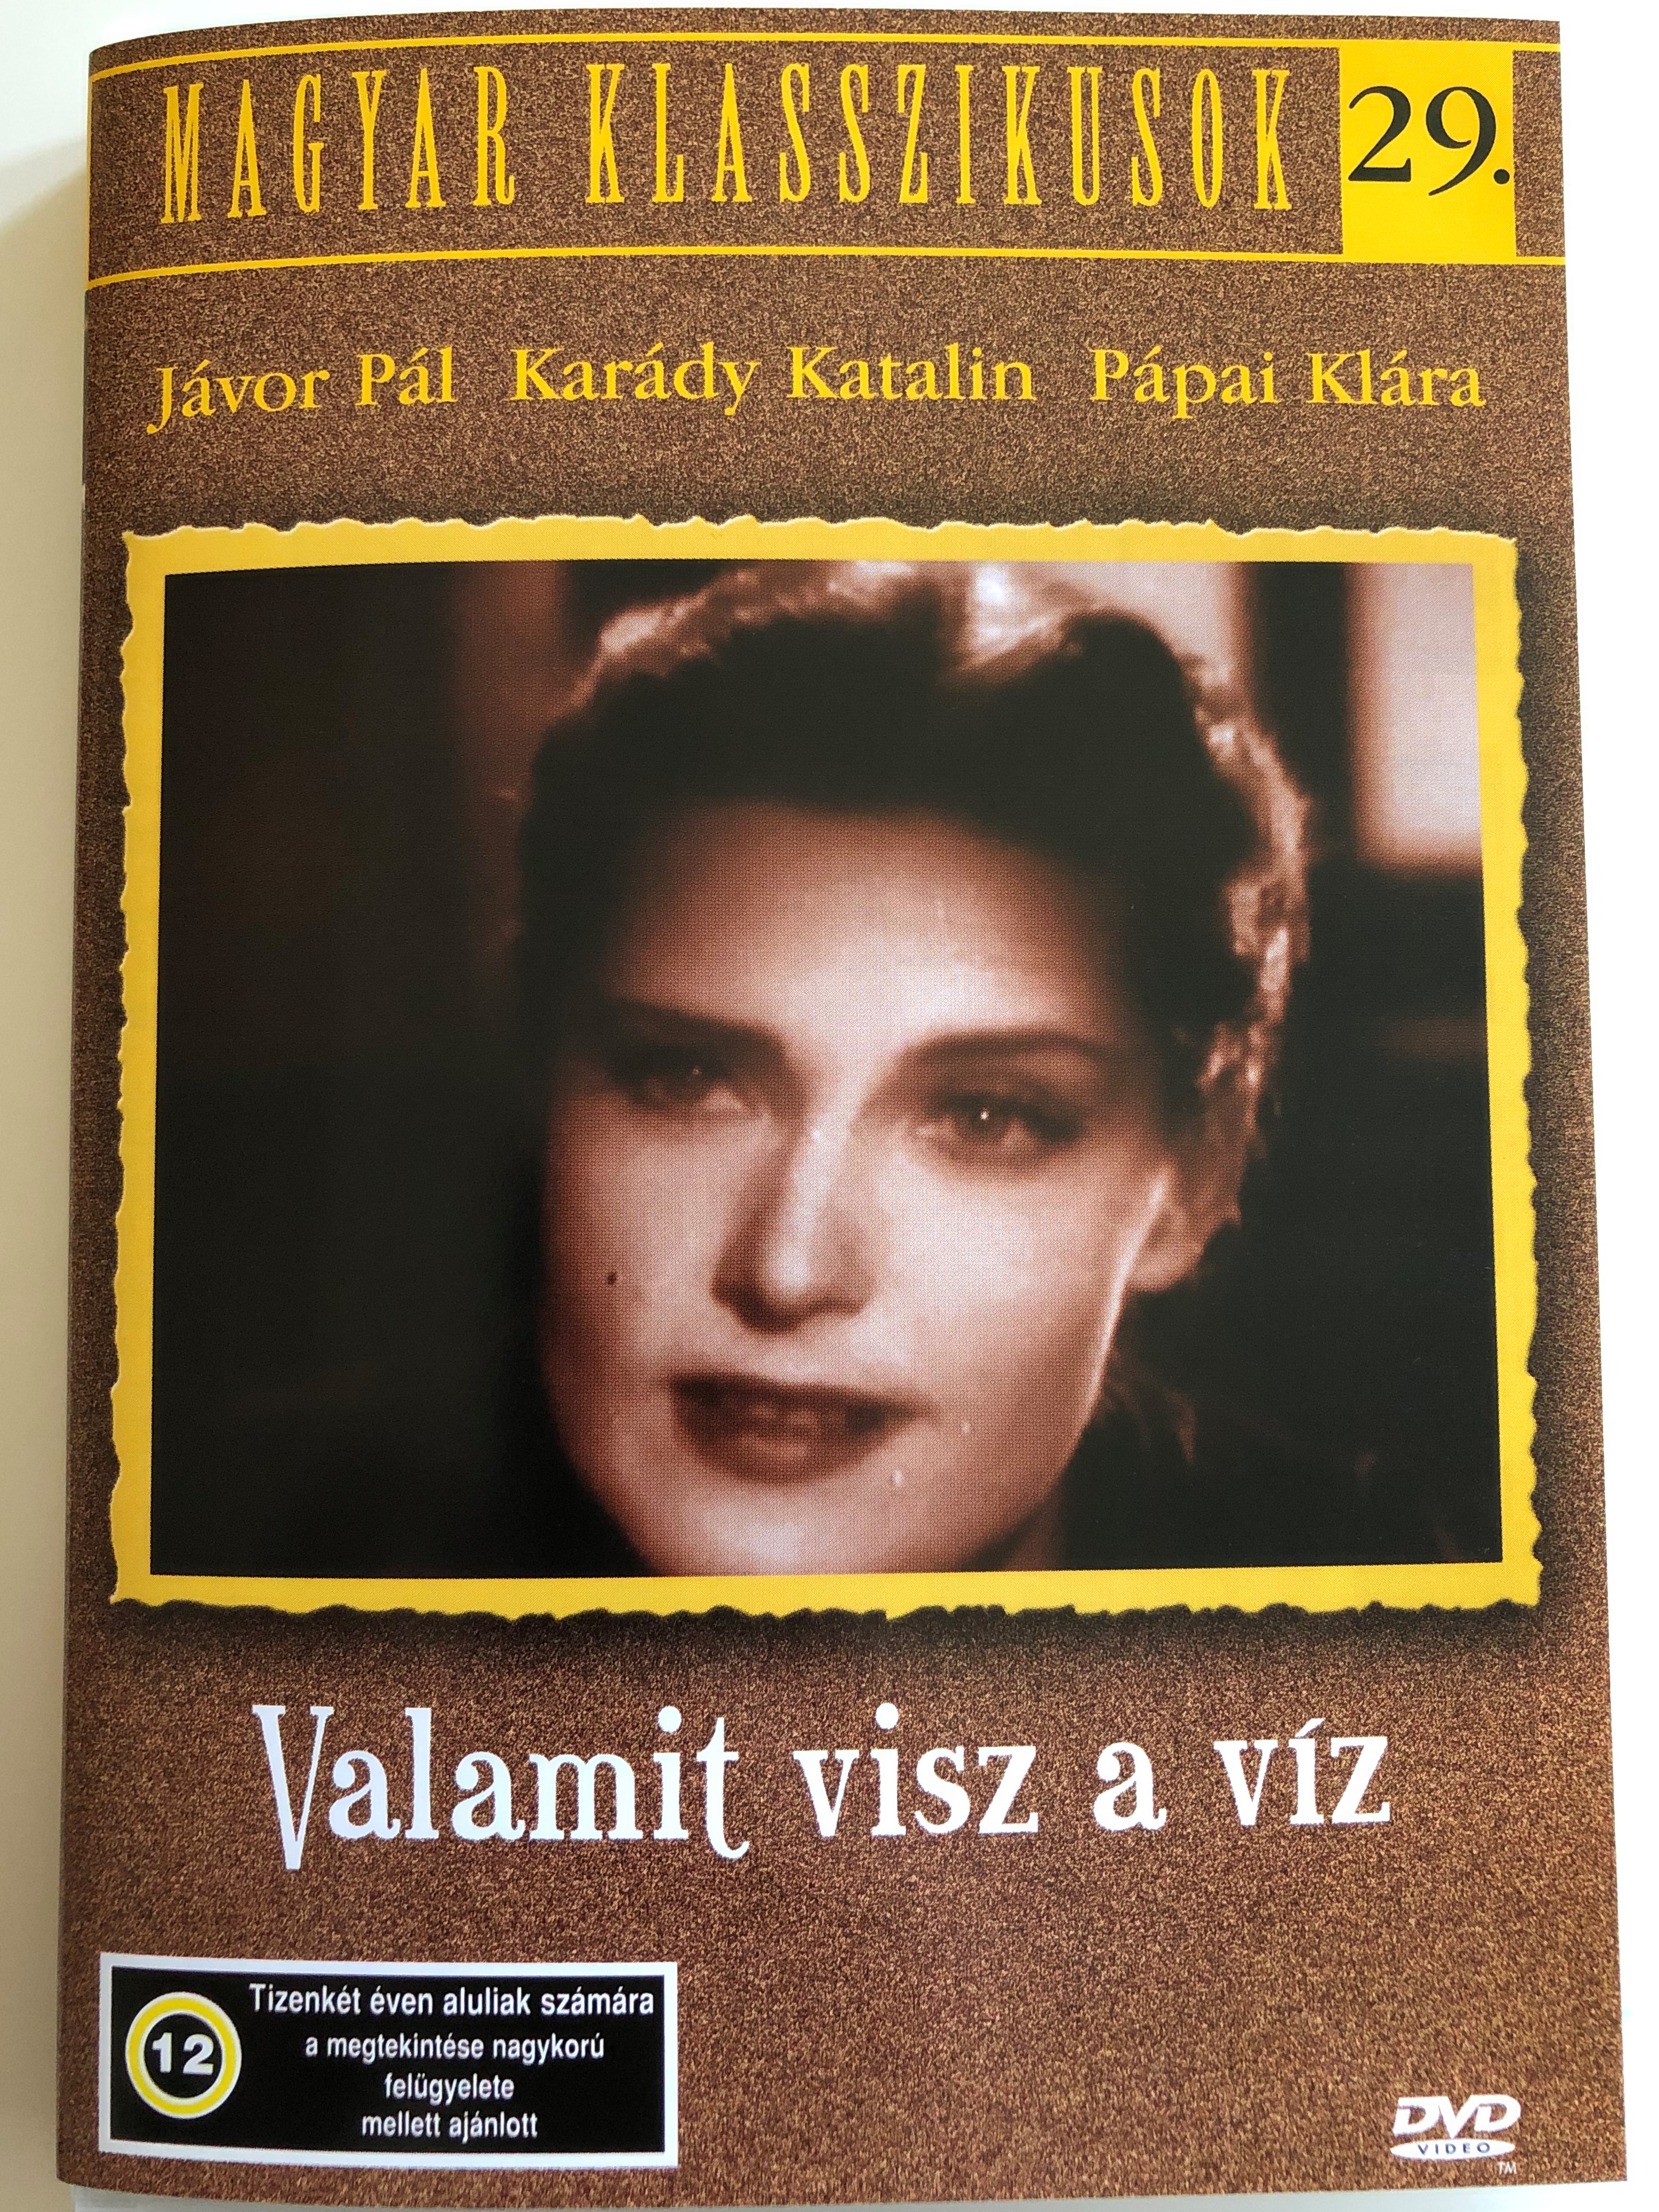 valamit-visz-a-v-z-dvd-1943-directed-by-ol-h-guszt-v-zilahy-lajos-starring-j-vor-p-l-kar-dy-katalin-p-pai-kl-ra-hungarian-classics-29.-1-.jpg